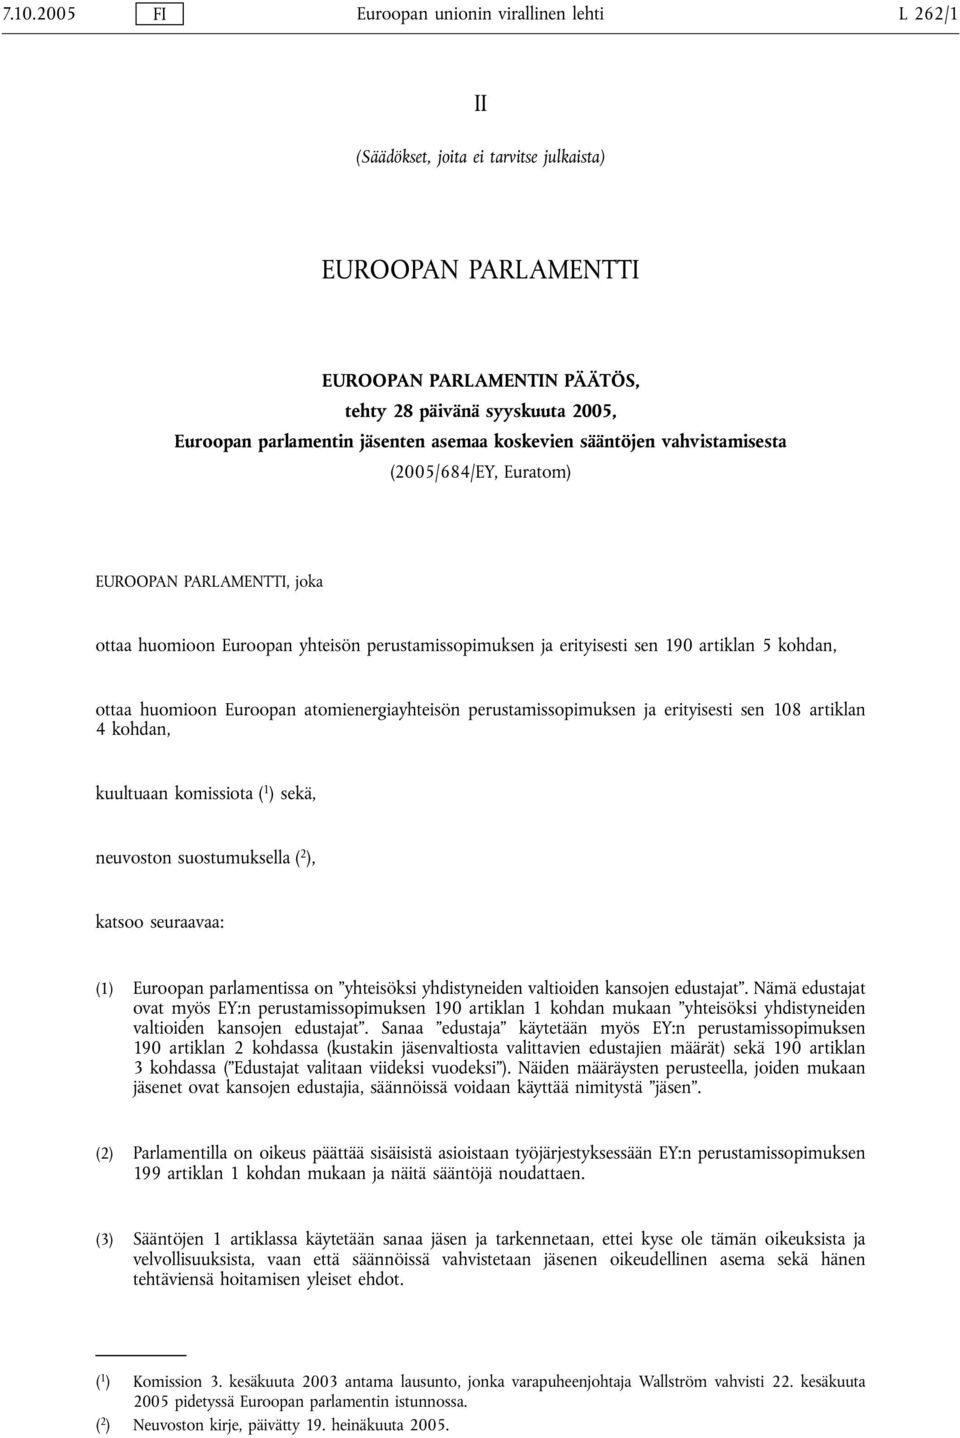 5 kohdan, ottaa huomioon Euroopan atomienergiayhteisön perustamissopimuksen ja erityisesti sen 108 artiklan 4 kohdan, kuultuaan komissiota ( 1 ) sekä, neuvoston suostumuksella ( 2 ), katsoo